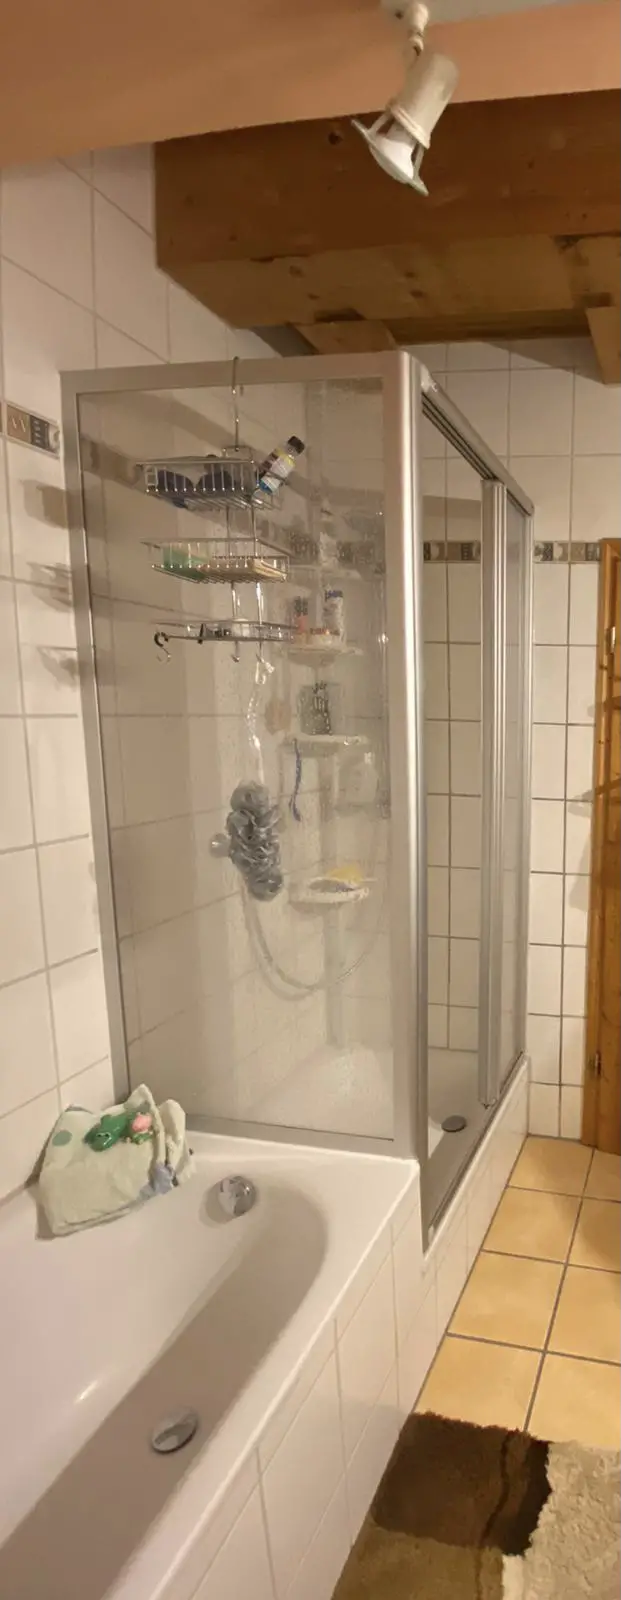 bad-renovieren-komische-duschkabine-483598-1.jpg